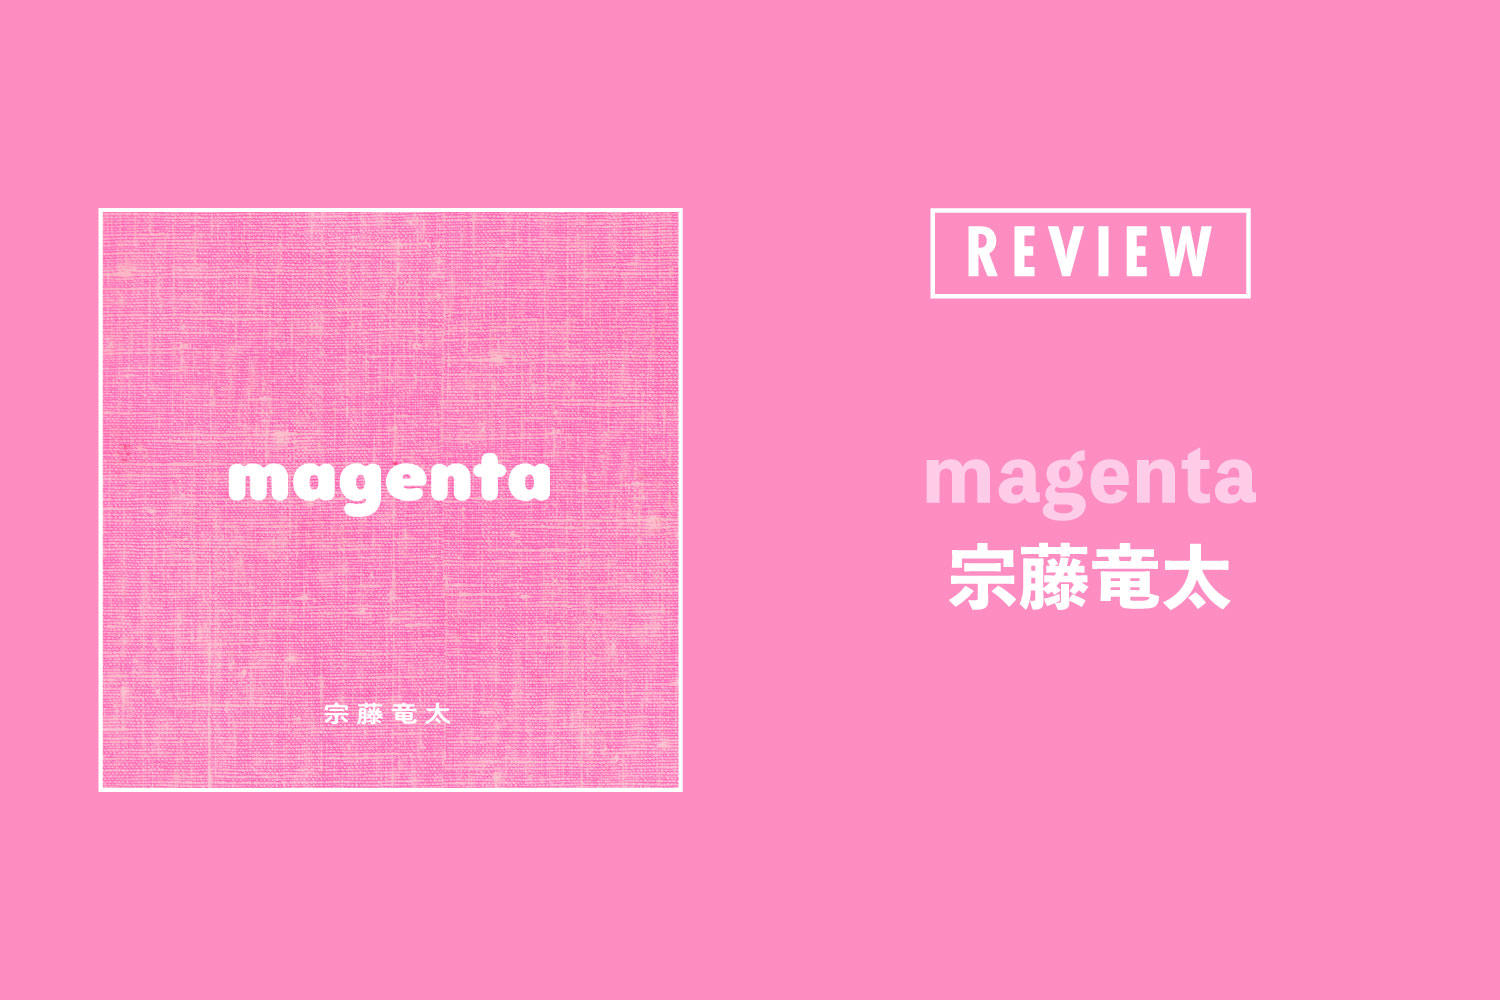 宗藤竜太「magenta」──小さきものを忘れぬために。シンガー・ソングライターが刻んだ幸福と悲しみの記録